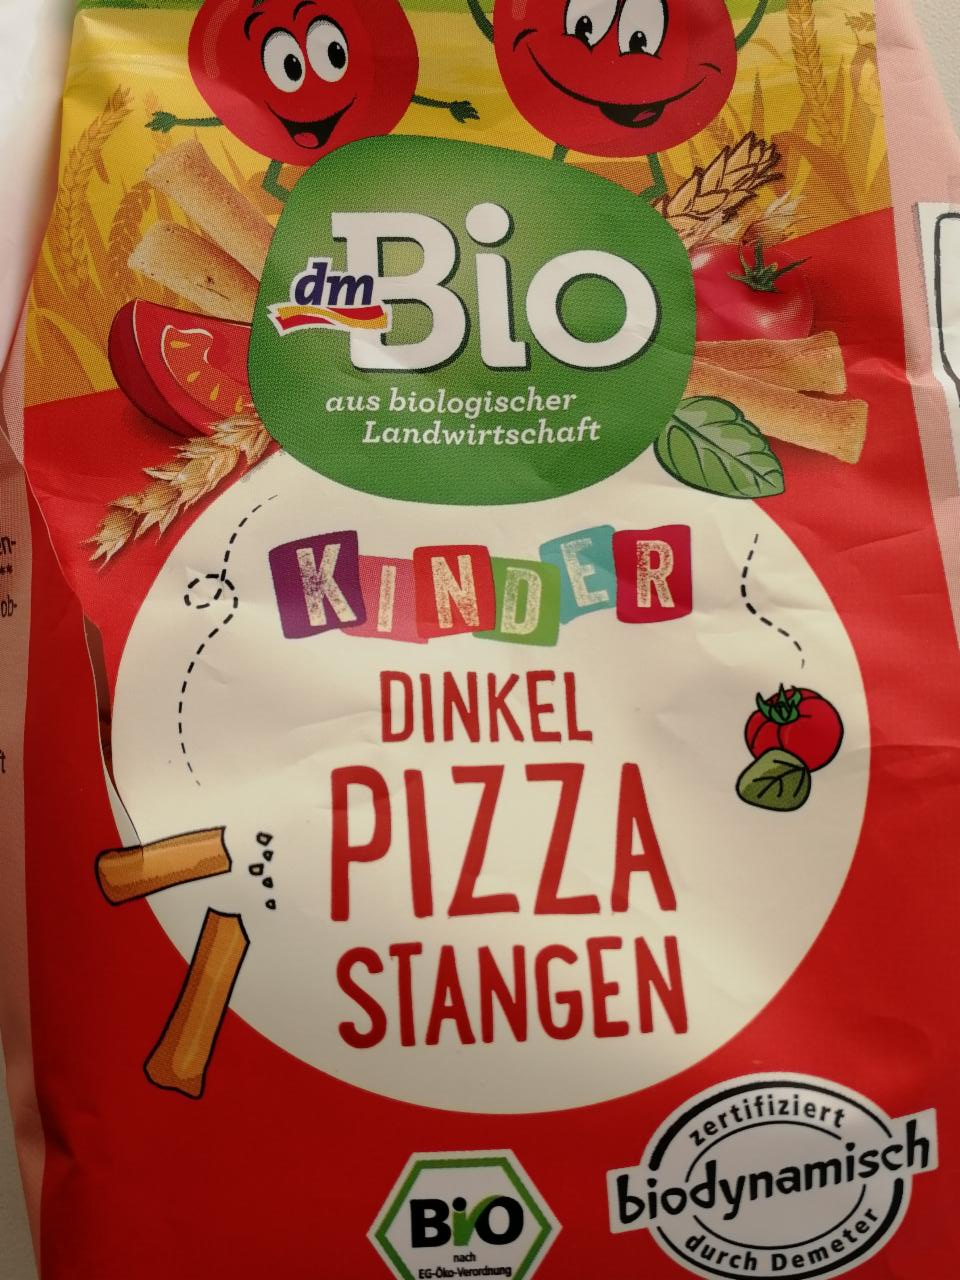 Fotografie - Kinder Dinkel Pizza Stangen dmBio